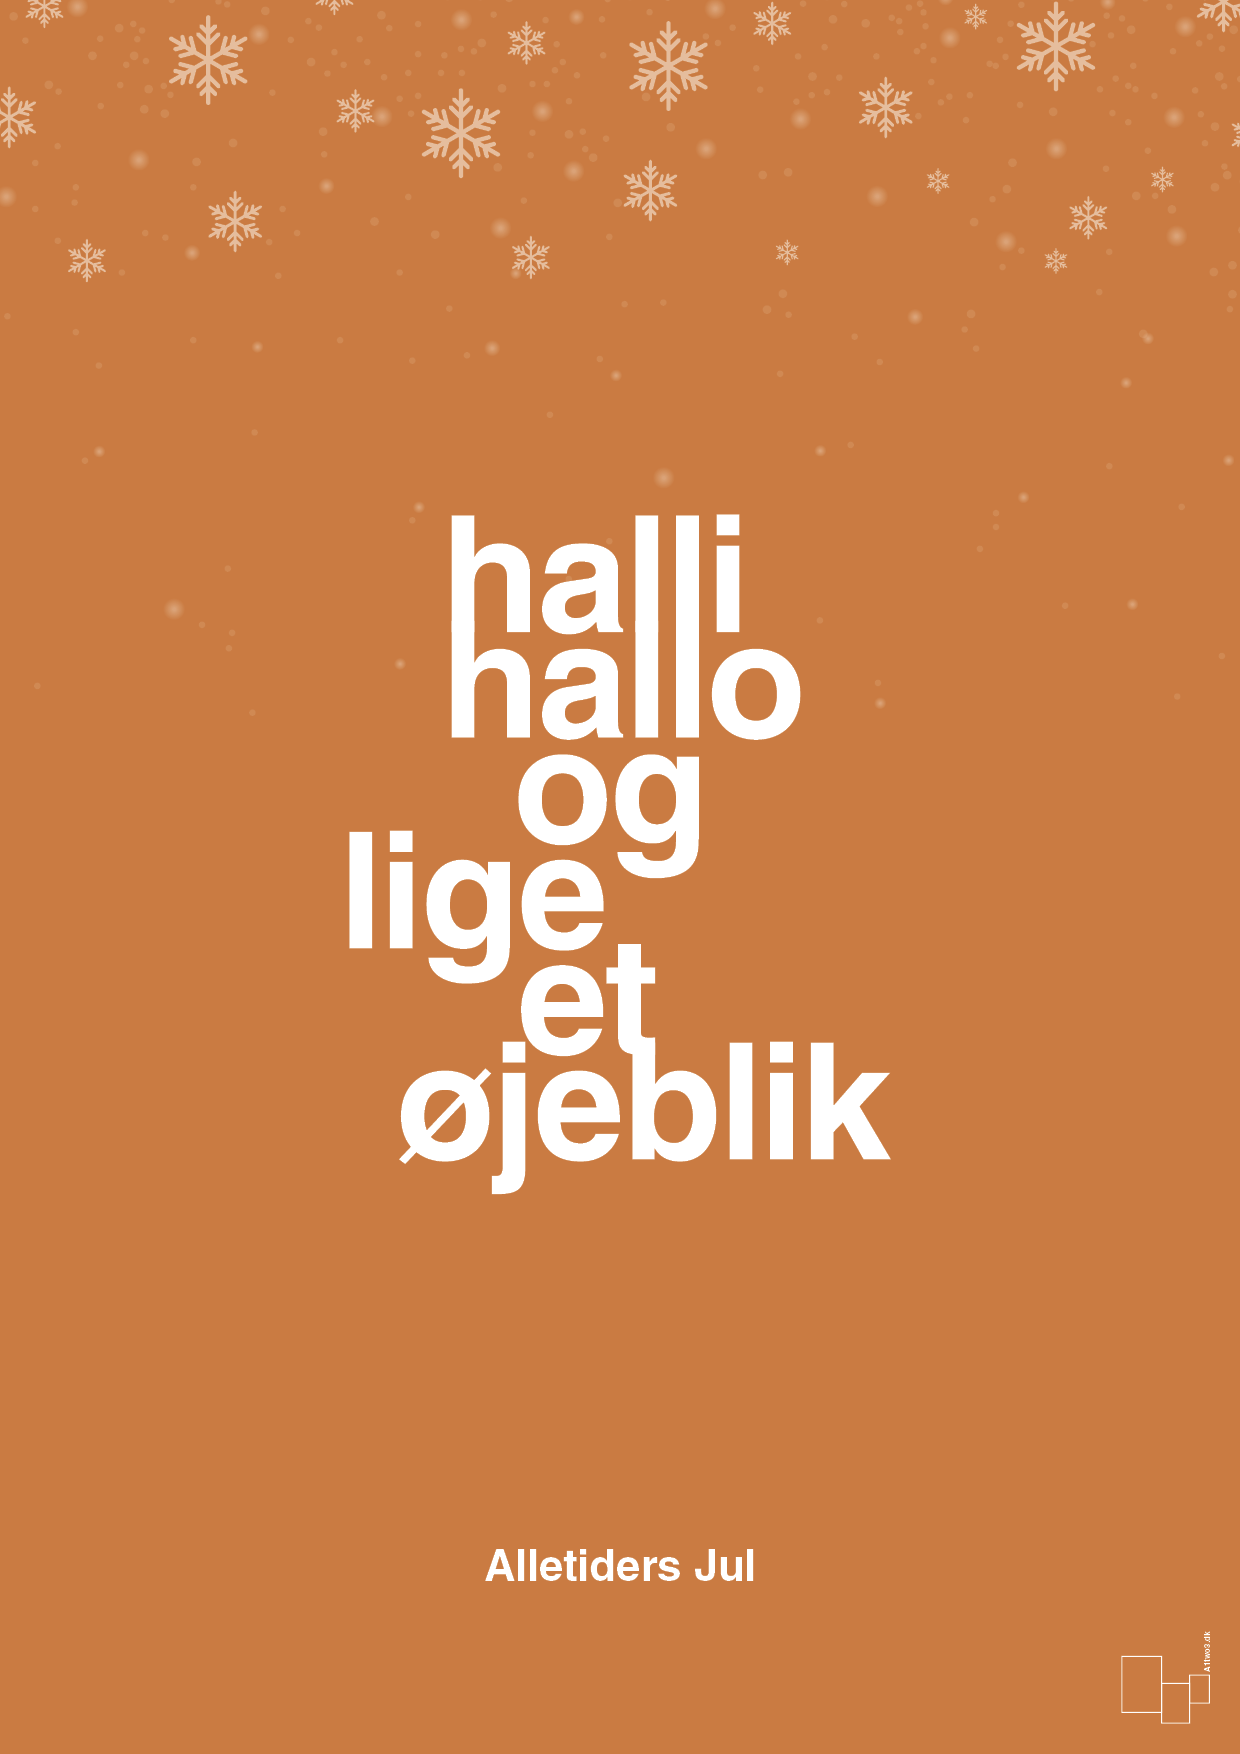 halli hallo og lige et øjeblik - Plakat med Begivenheder i Rumba Orange